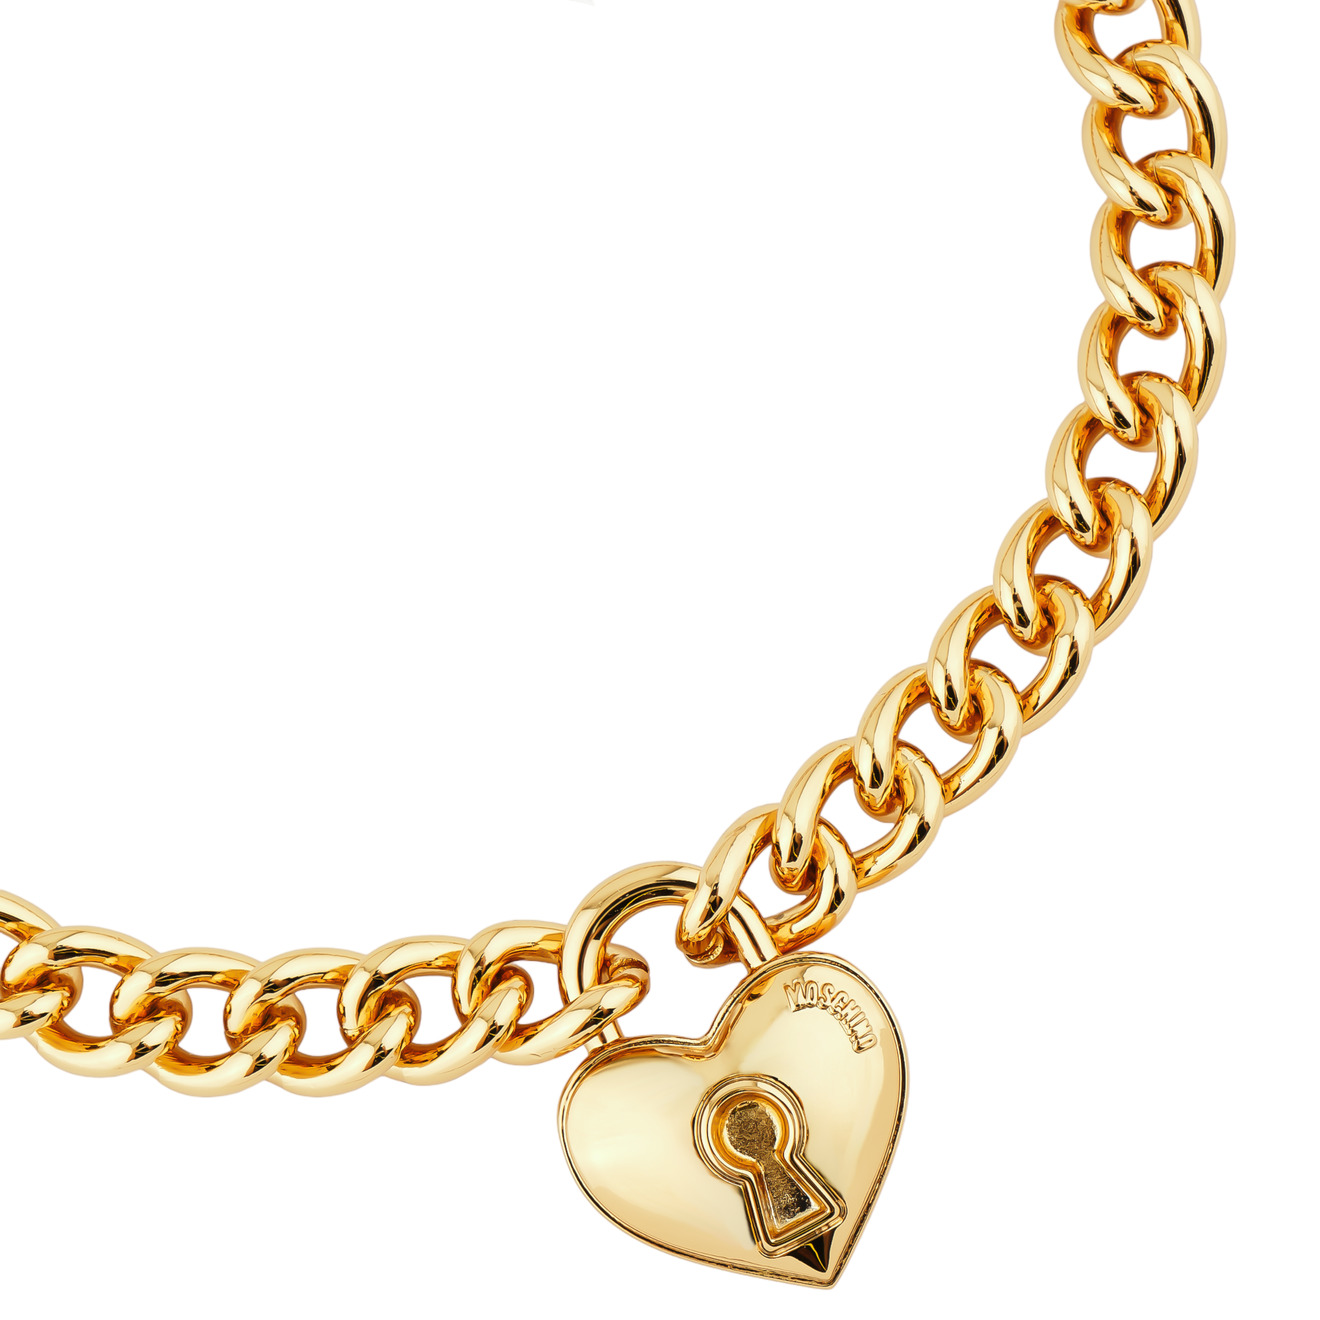 Moschino Колье цепь с подвеской в виде замка-сердца цепь колье ожерелье с подвеской в виде буквы b из нержавеющей стали золото